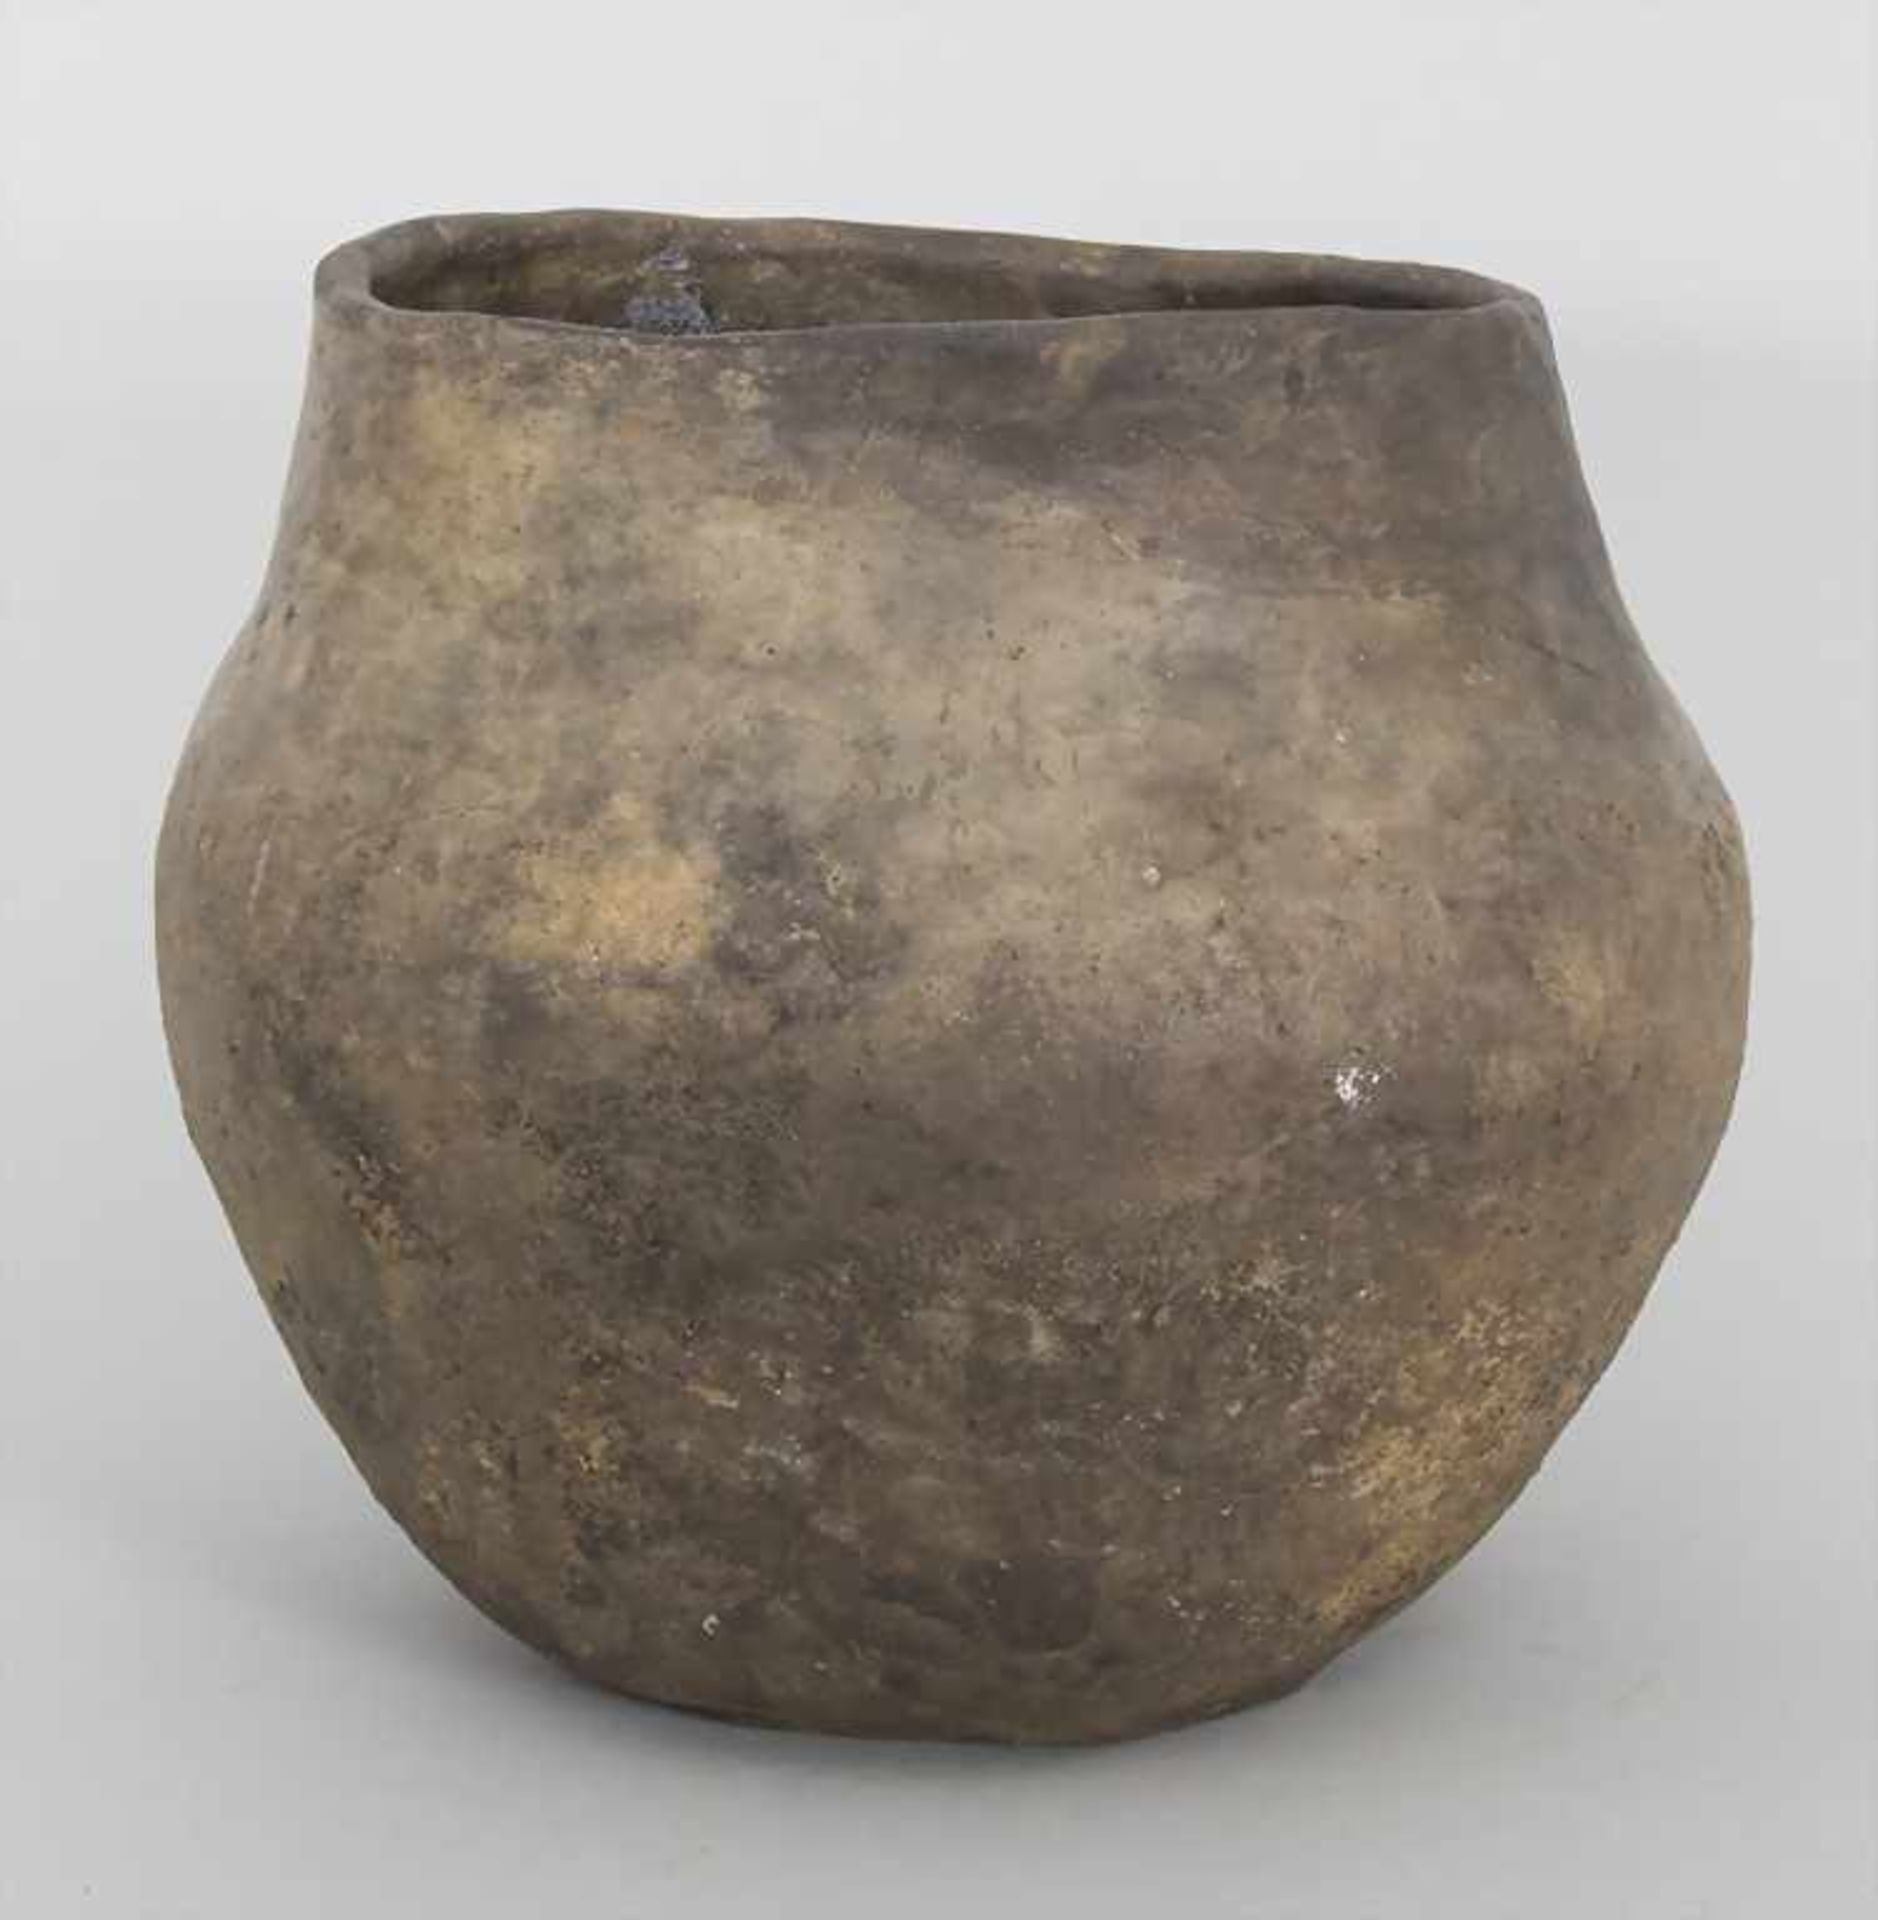 Bronzezeitliches Keramik-Gefäß / A Bronze Age ceramic vessel, Lausitzer Kultur, 9. - 6. Jh. v. Chr. - Image 3 of 5